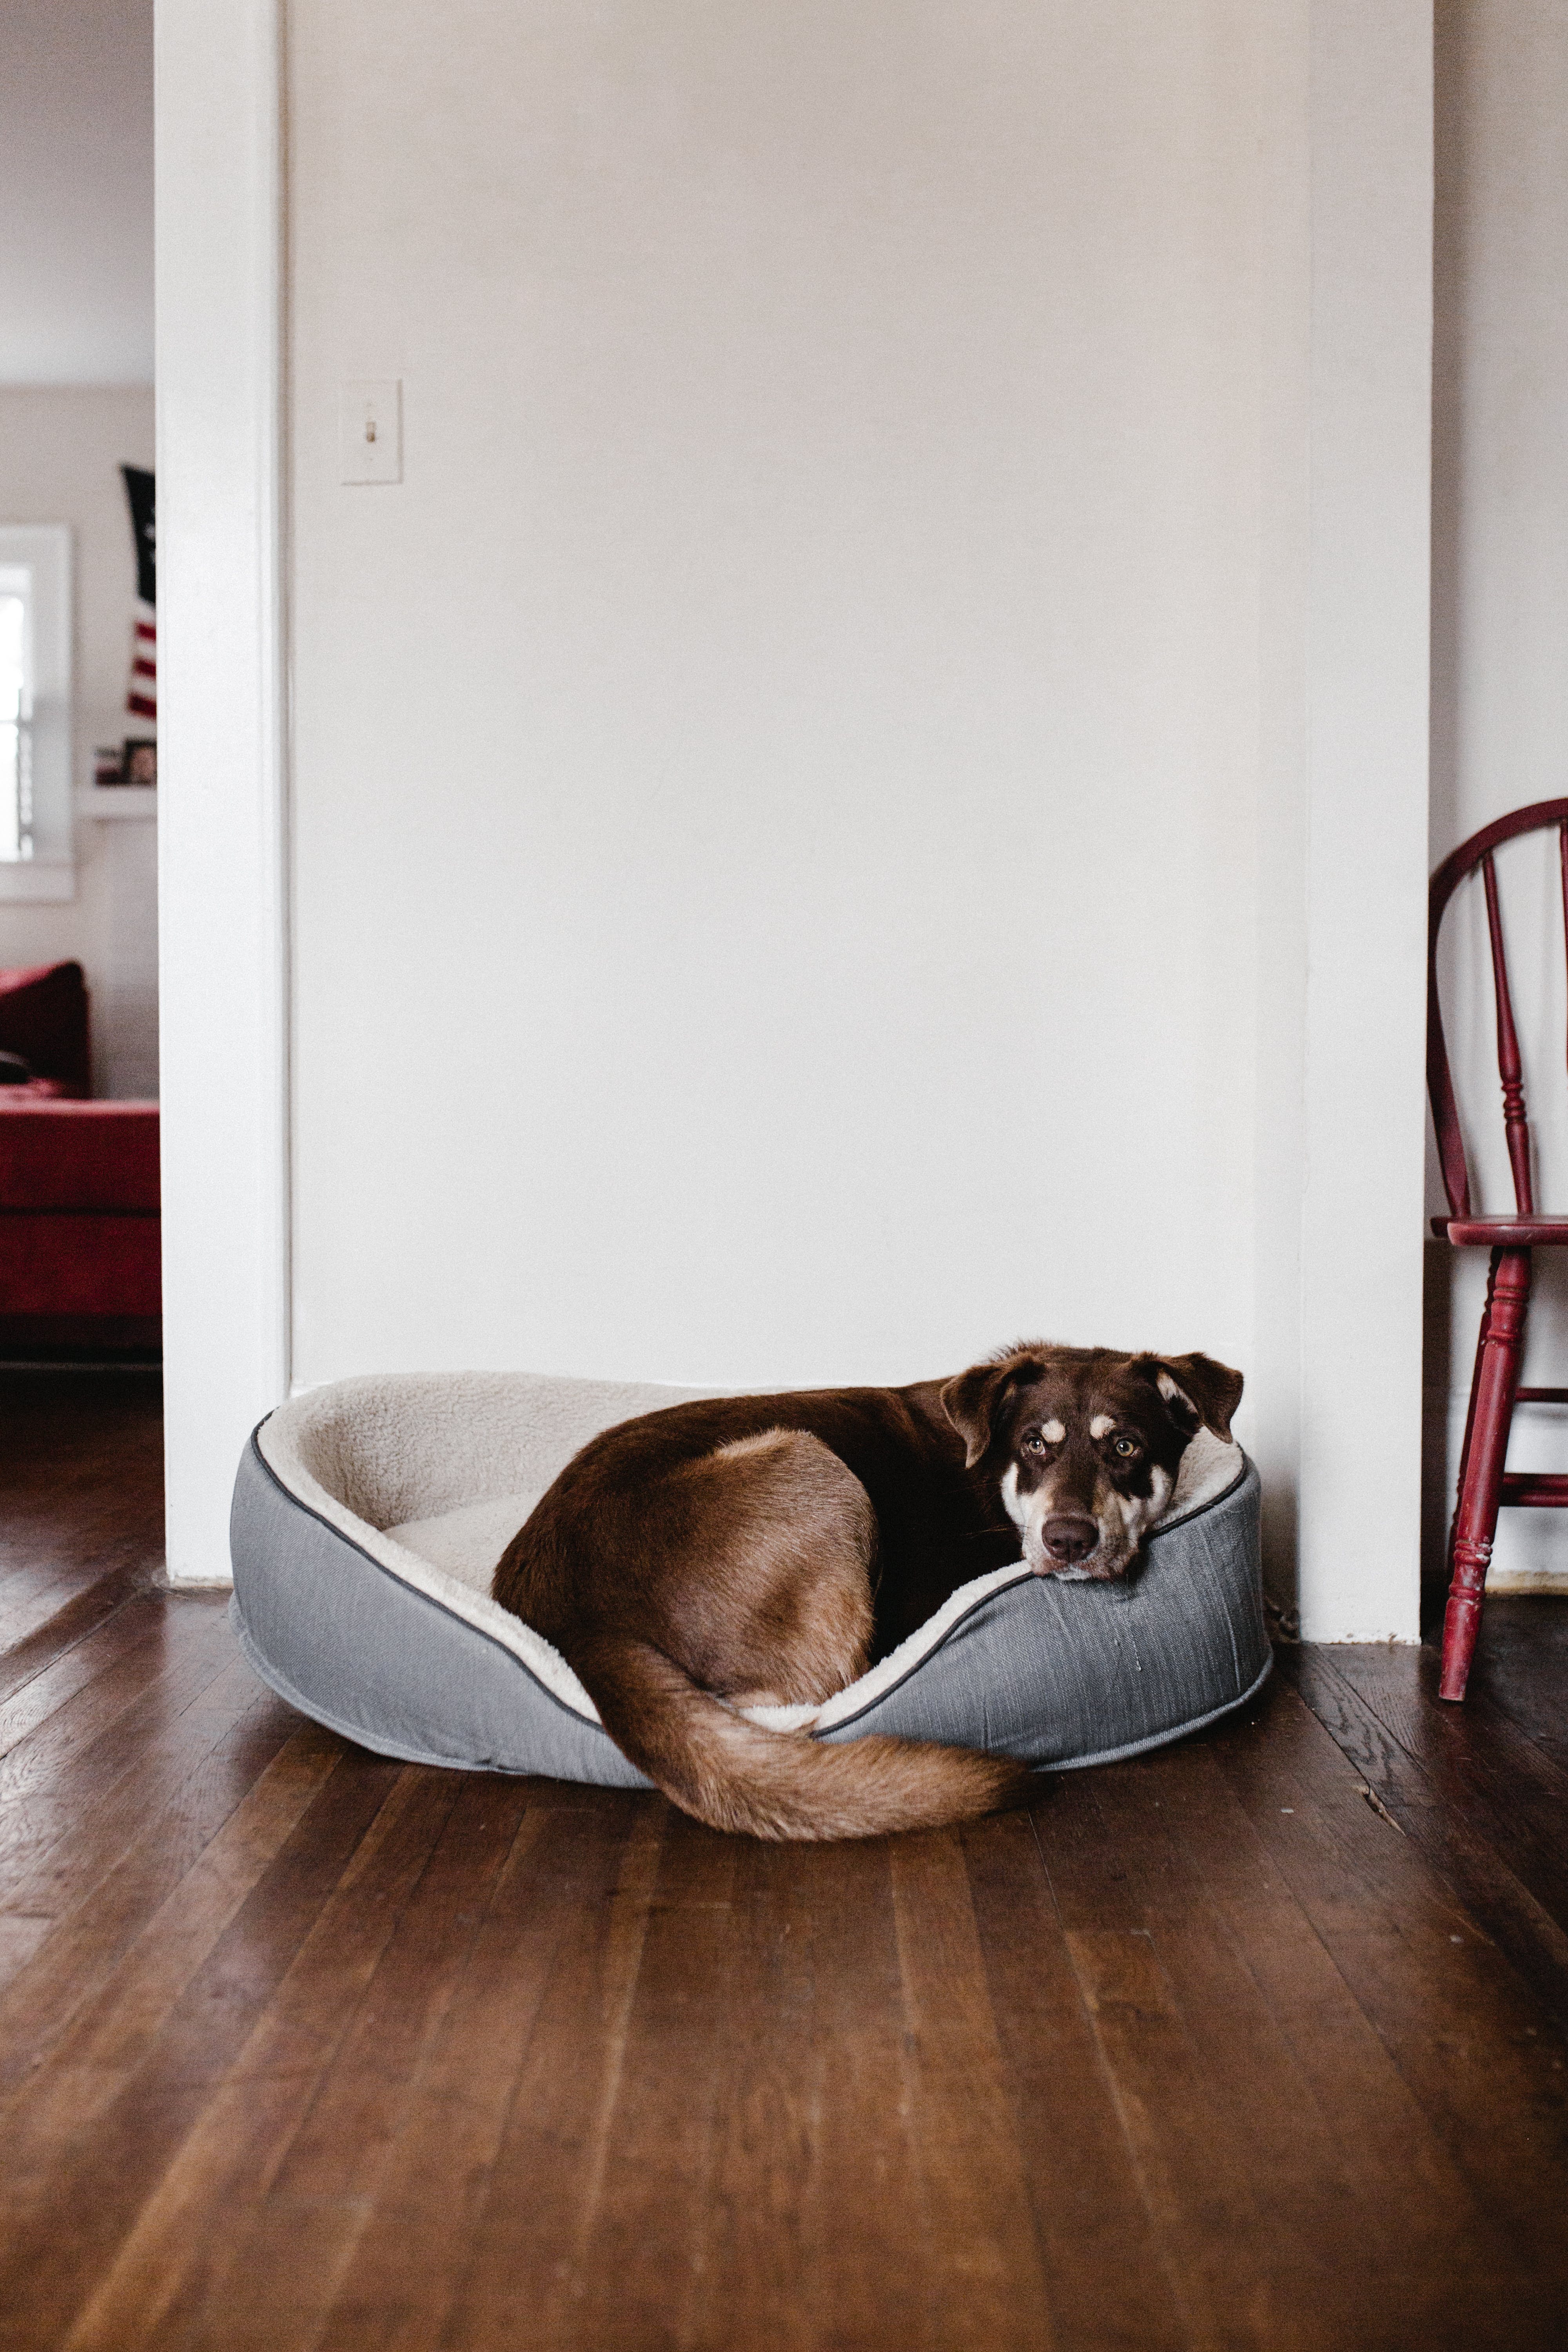 Un perro descansando en una cama para mascotas. | Fuente: Pexels